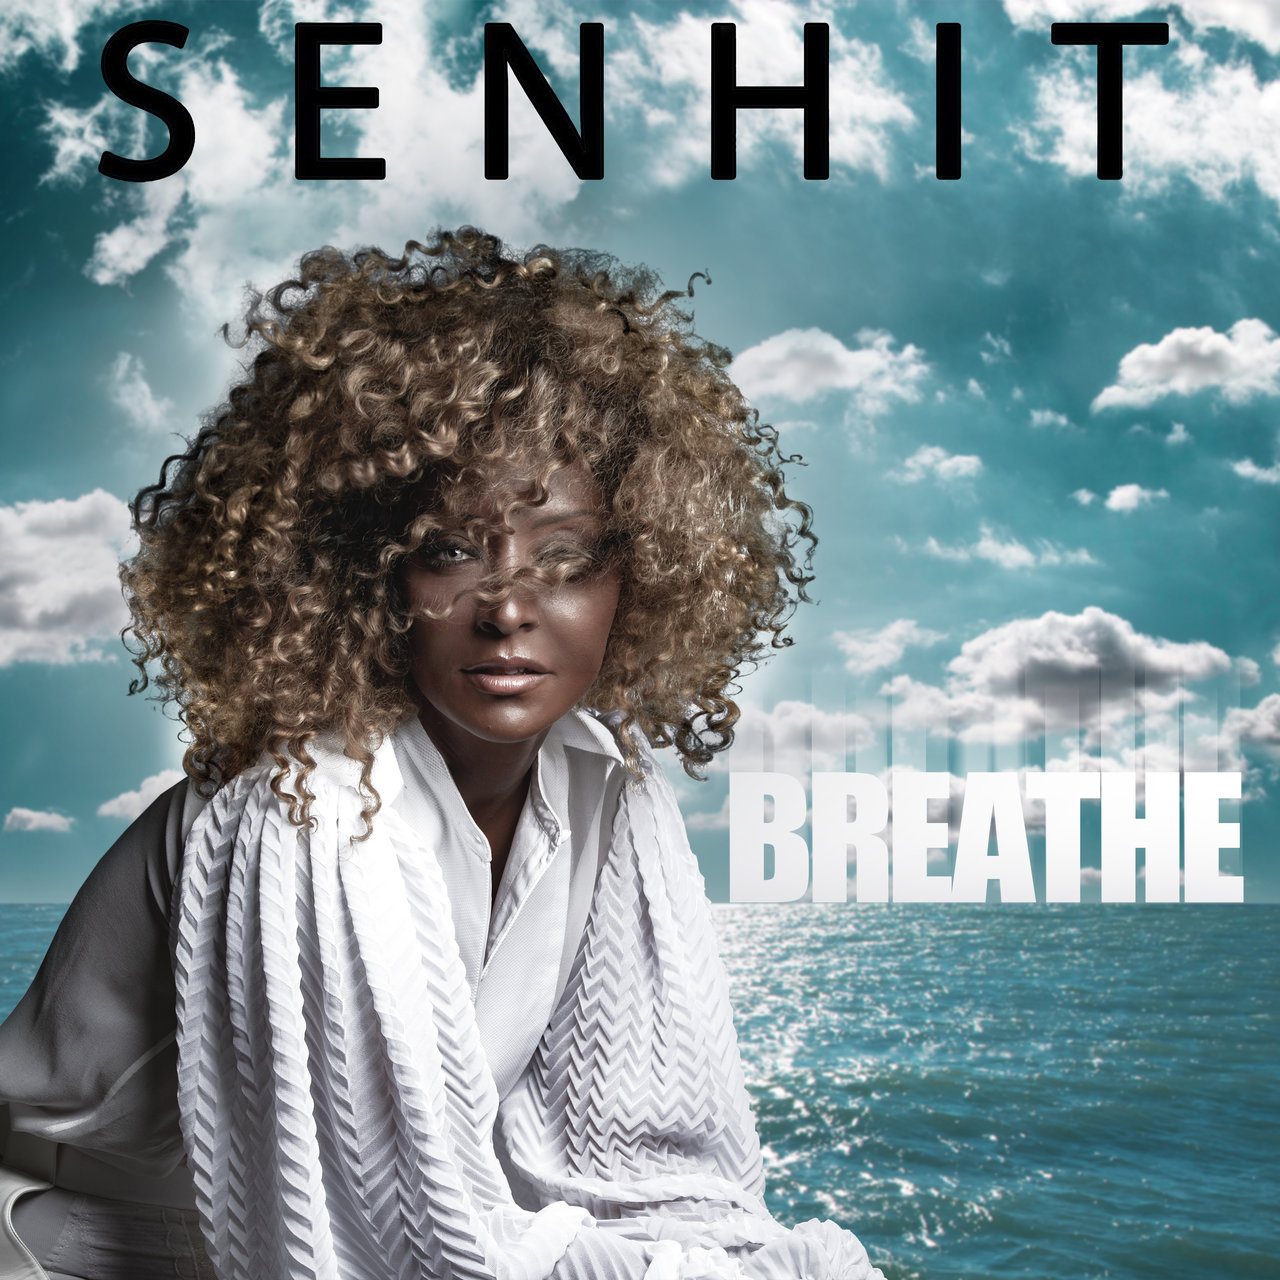 Senhit Breathe cover artwork